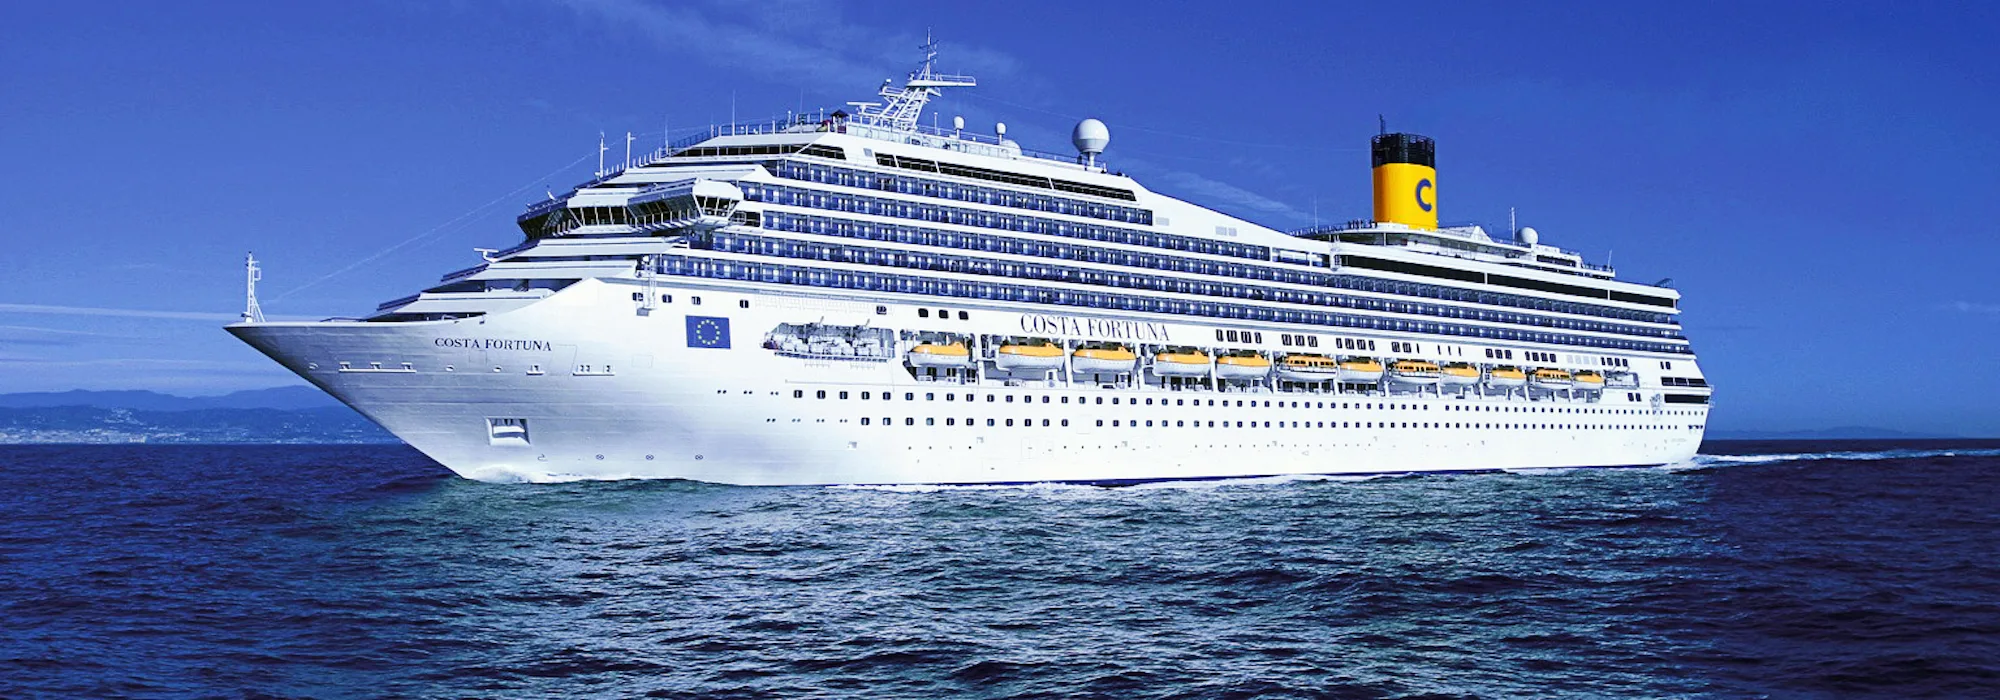 Costa Cruises - Costa Fortuna